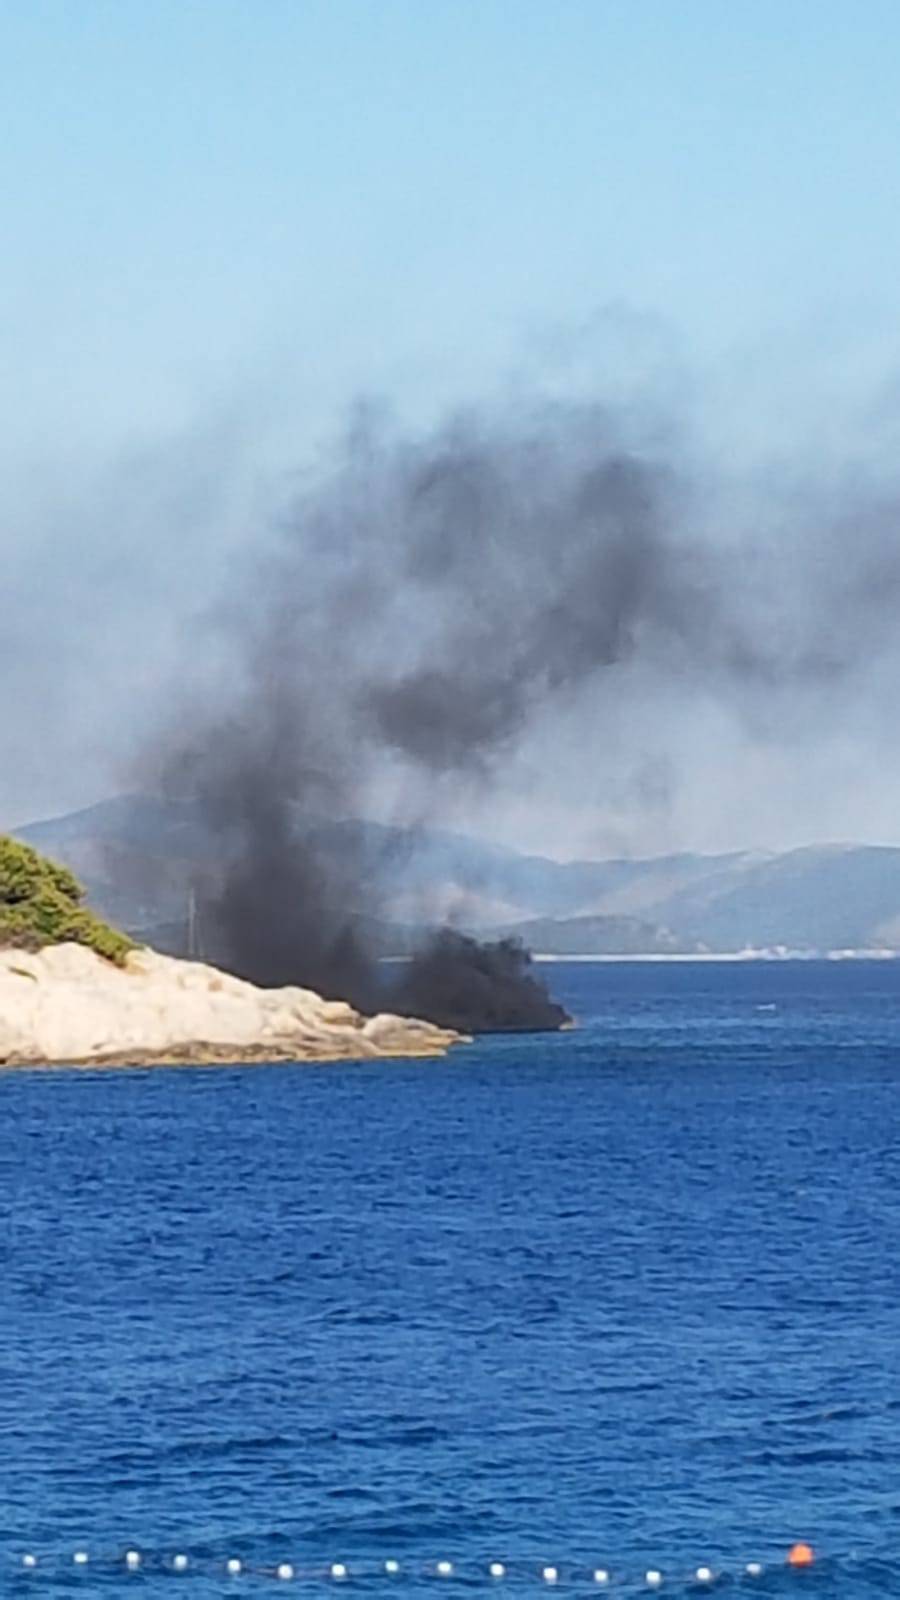 Planuo gliser blizu Šibenika, jedna osoba lakše ozlijeđena